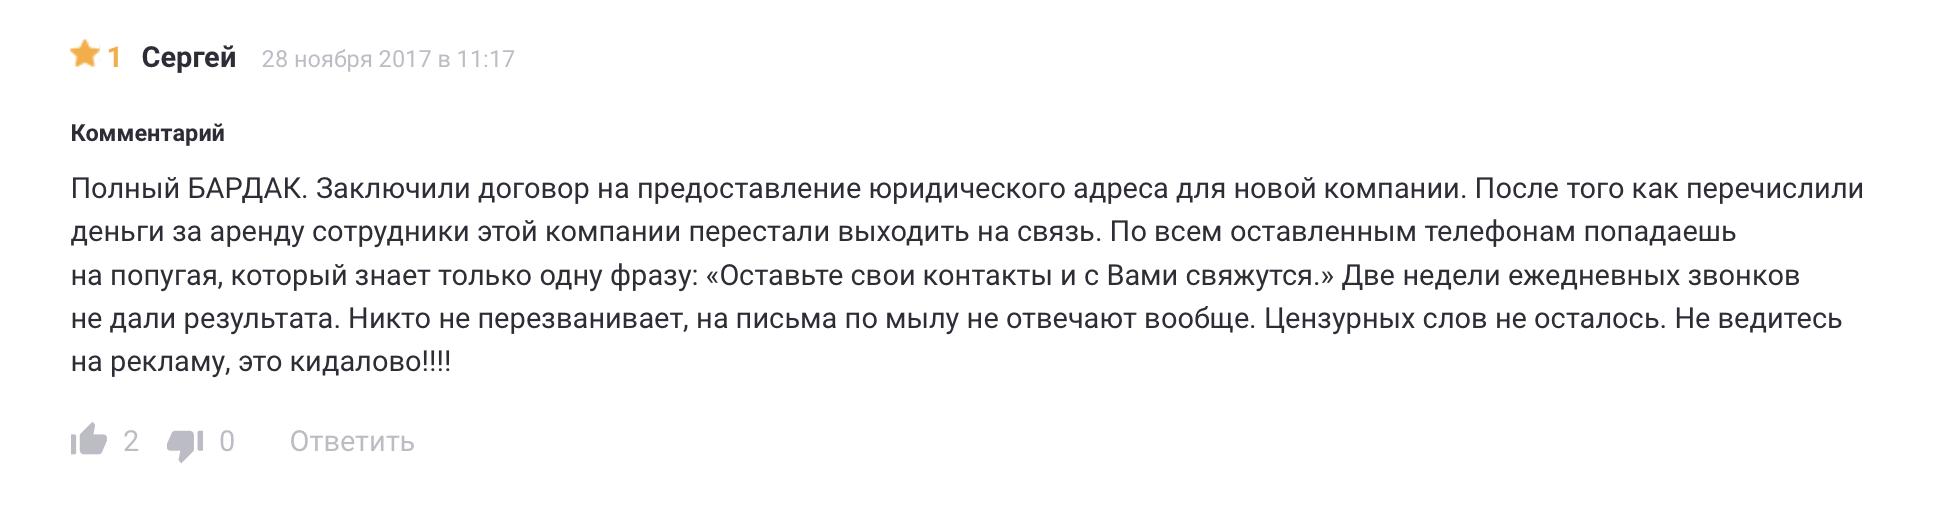 Отрицательный отзыв Сергея о работе «Экспресс Регистратора»